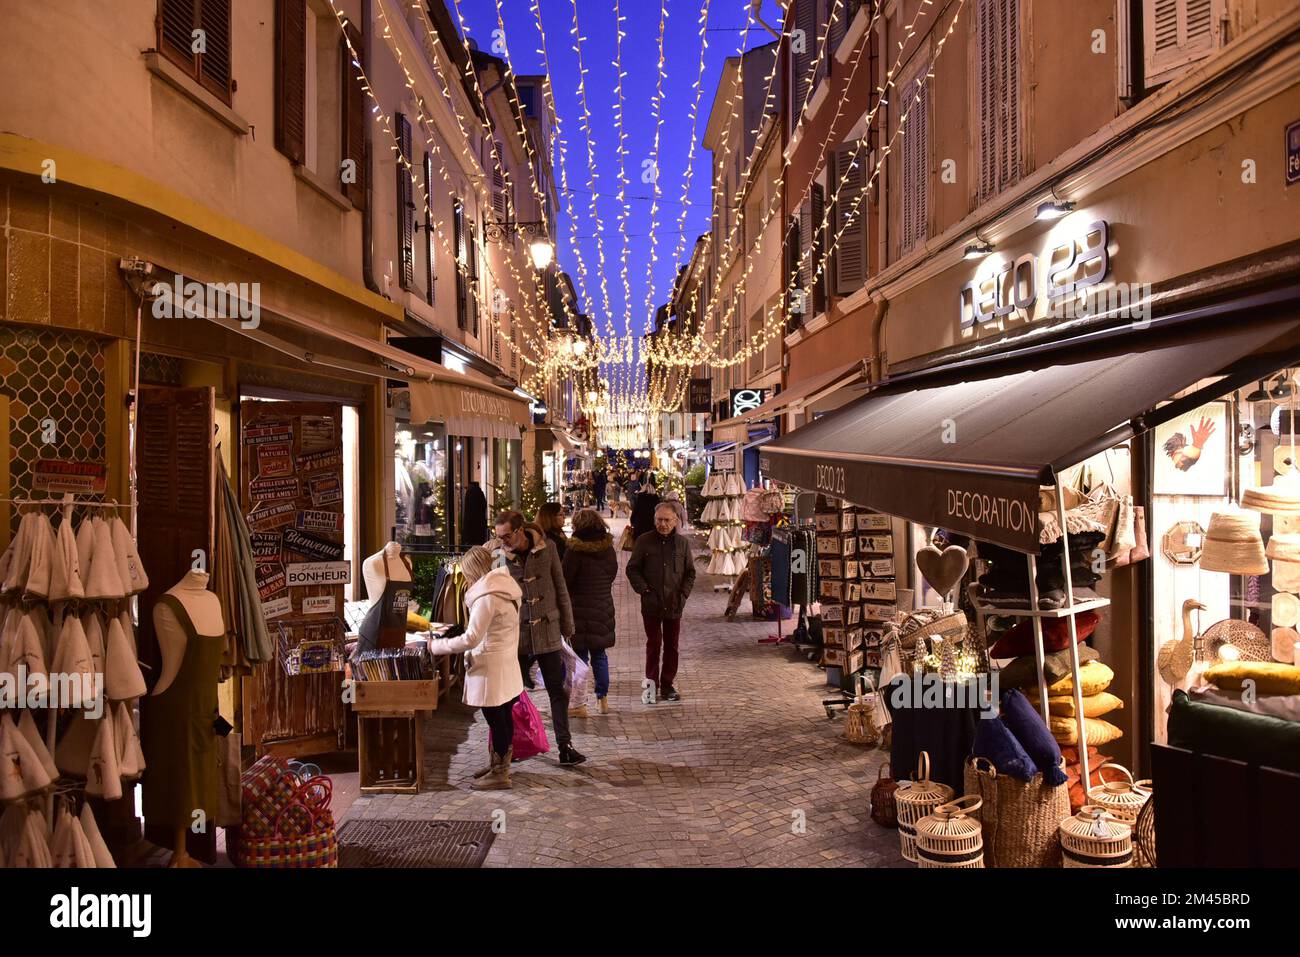 Ville de Sanary illuminée pour les vacances de Noël Banque D'Images